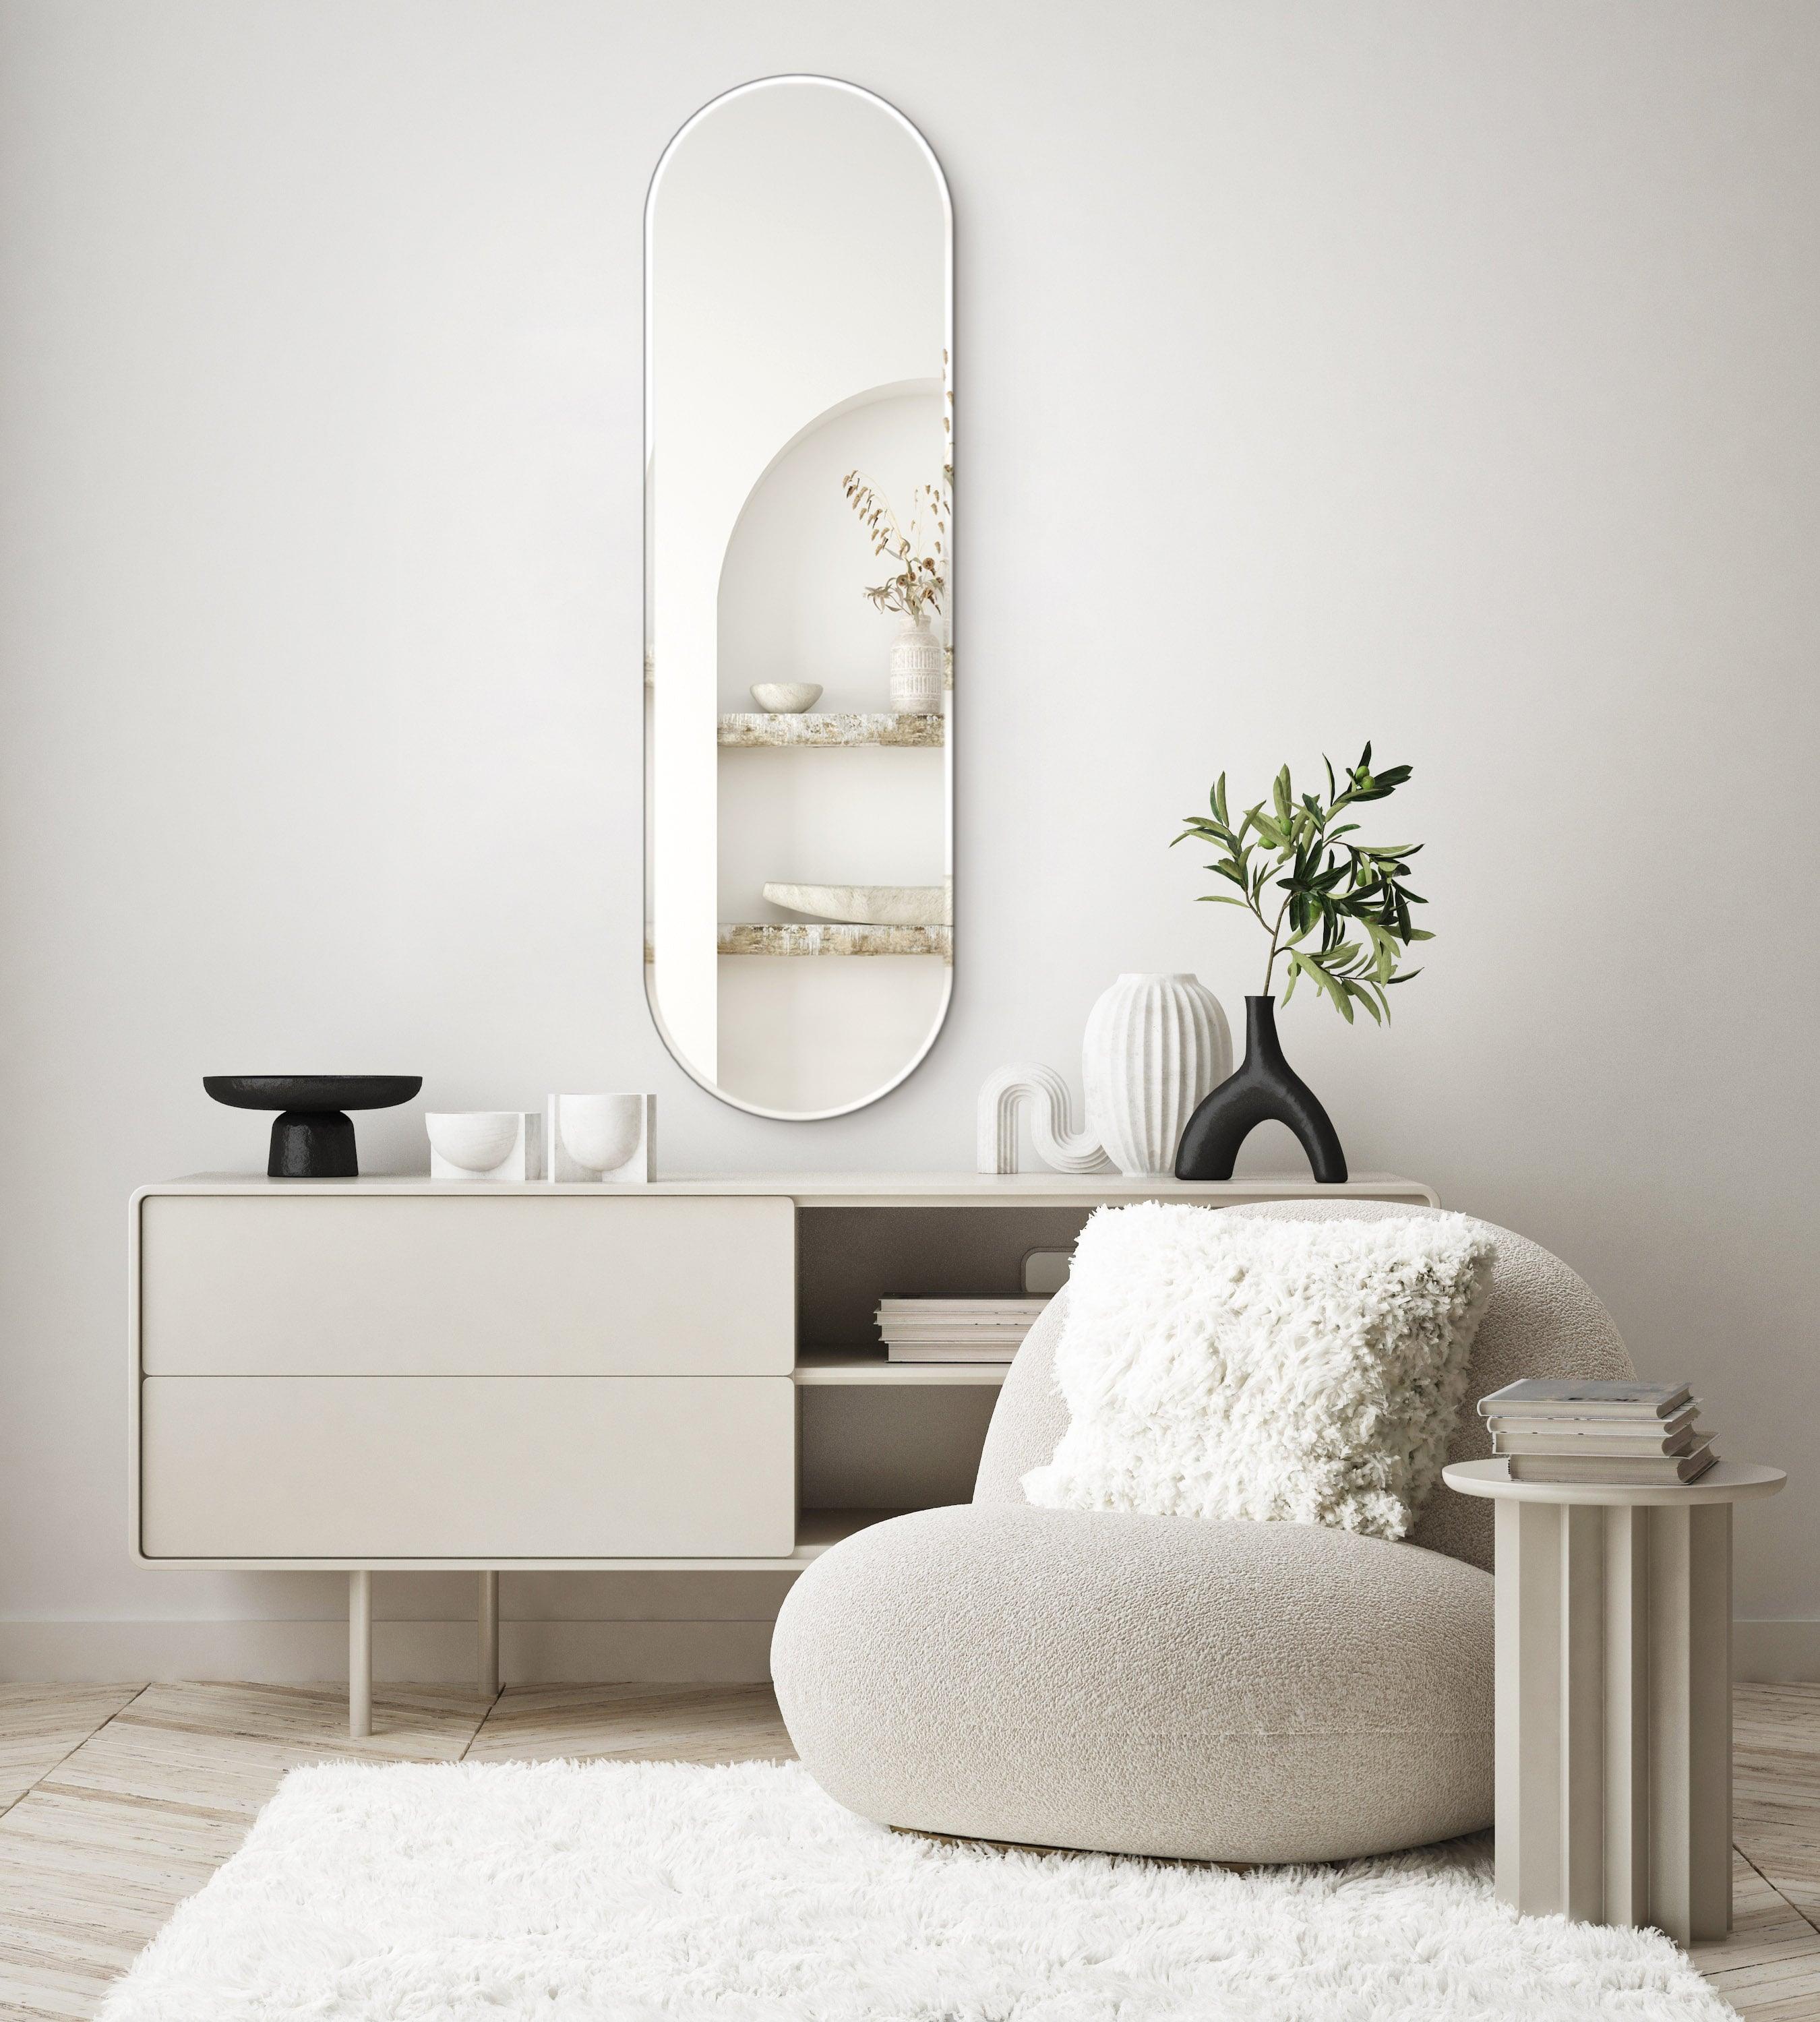 Oval Mirror no. 1 | 30 x 100 cm - Blossholm